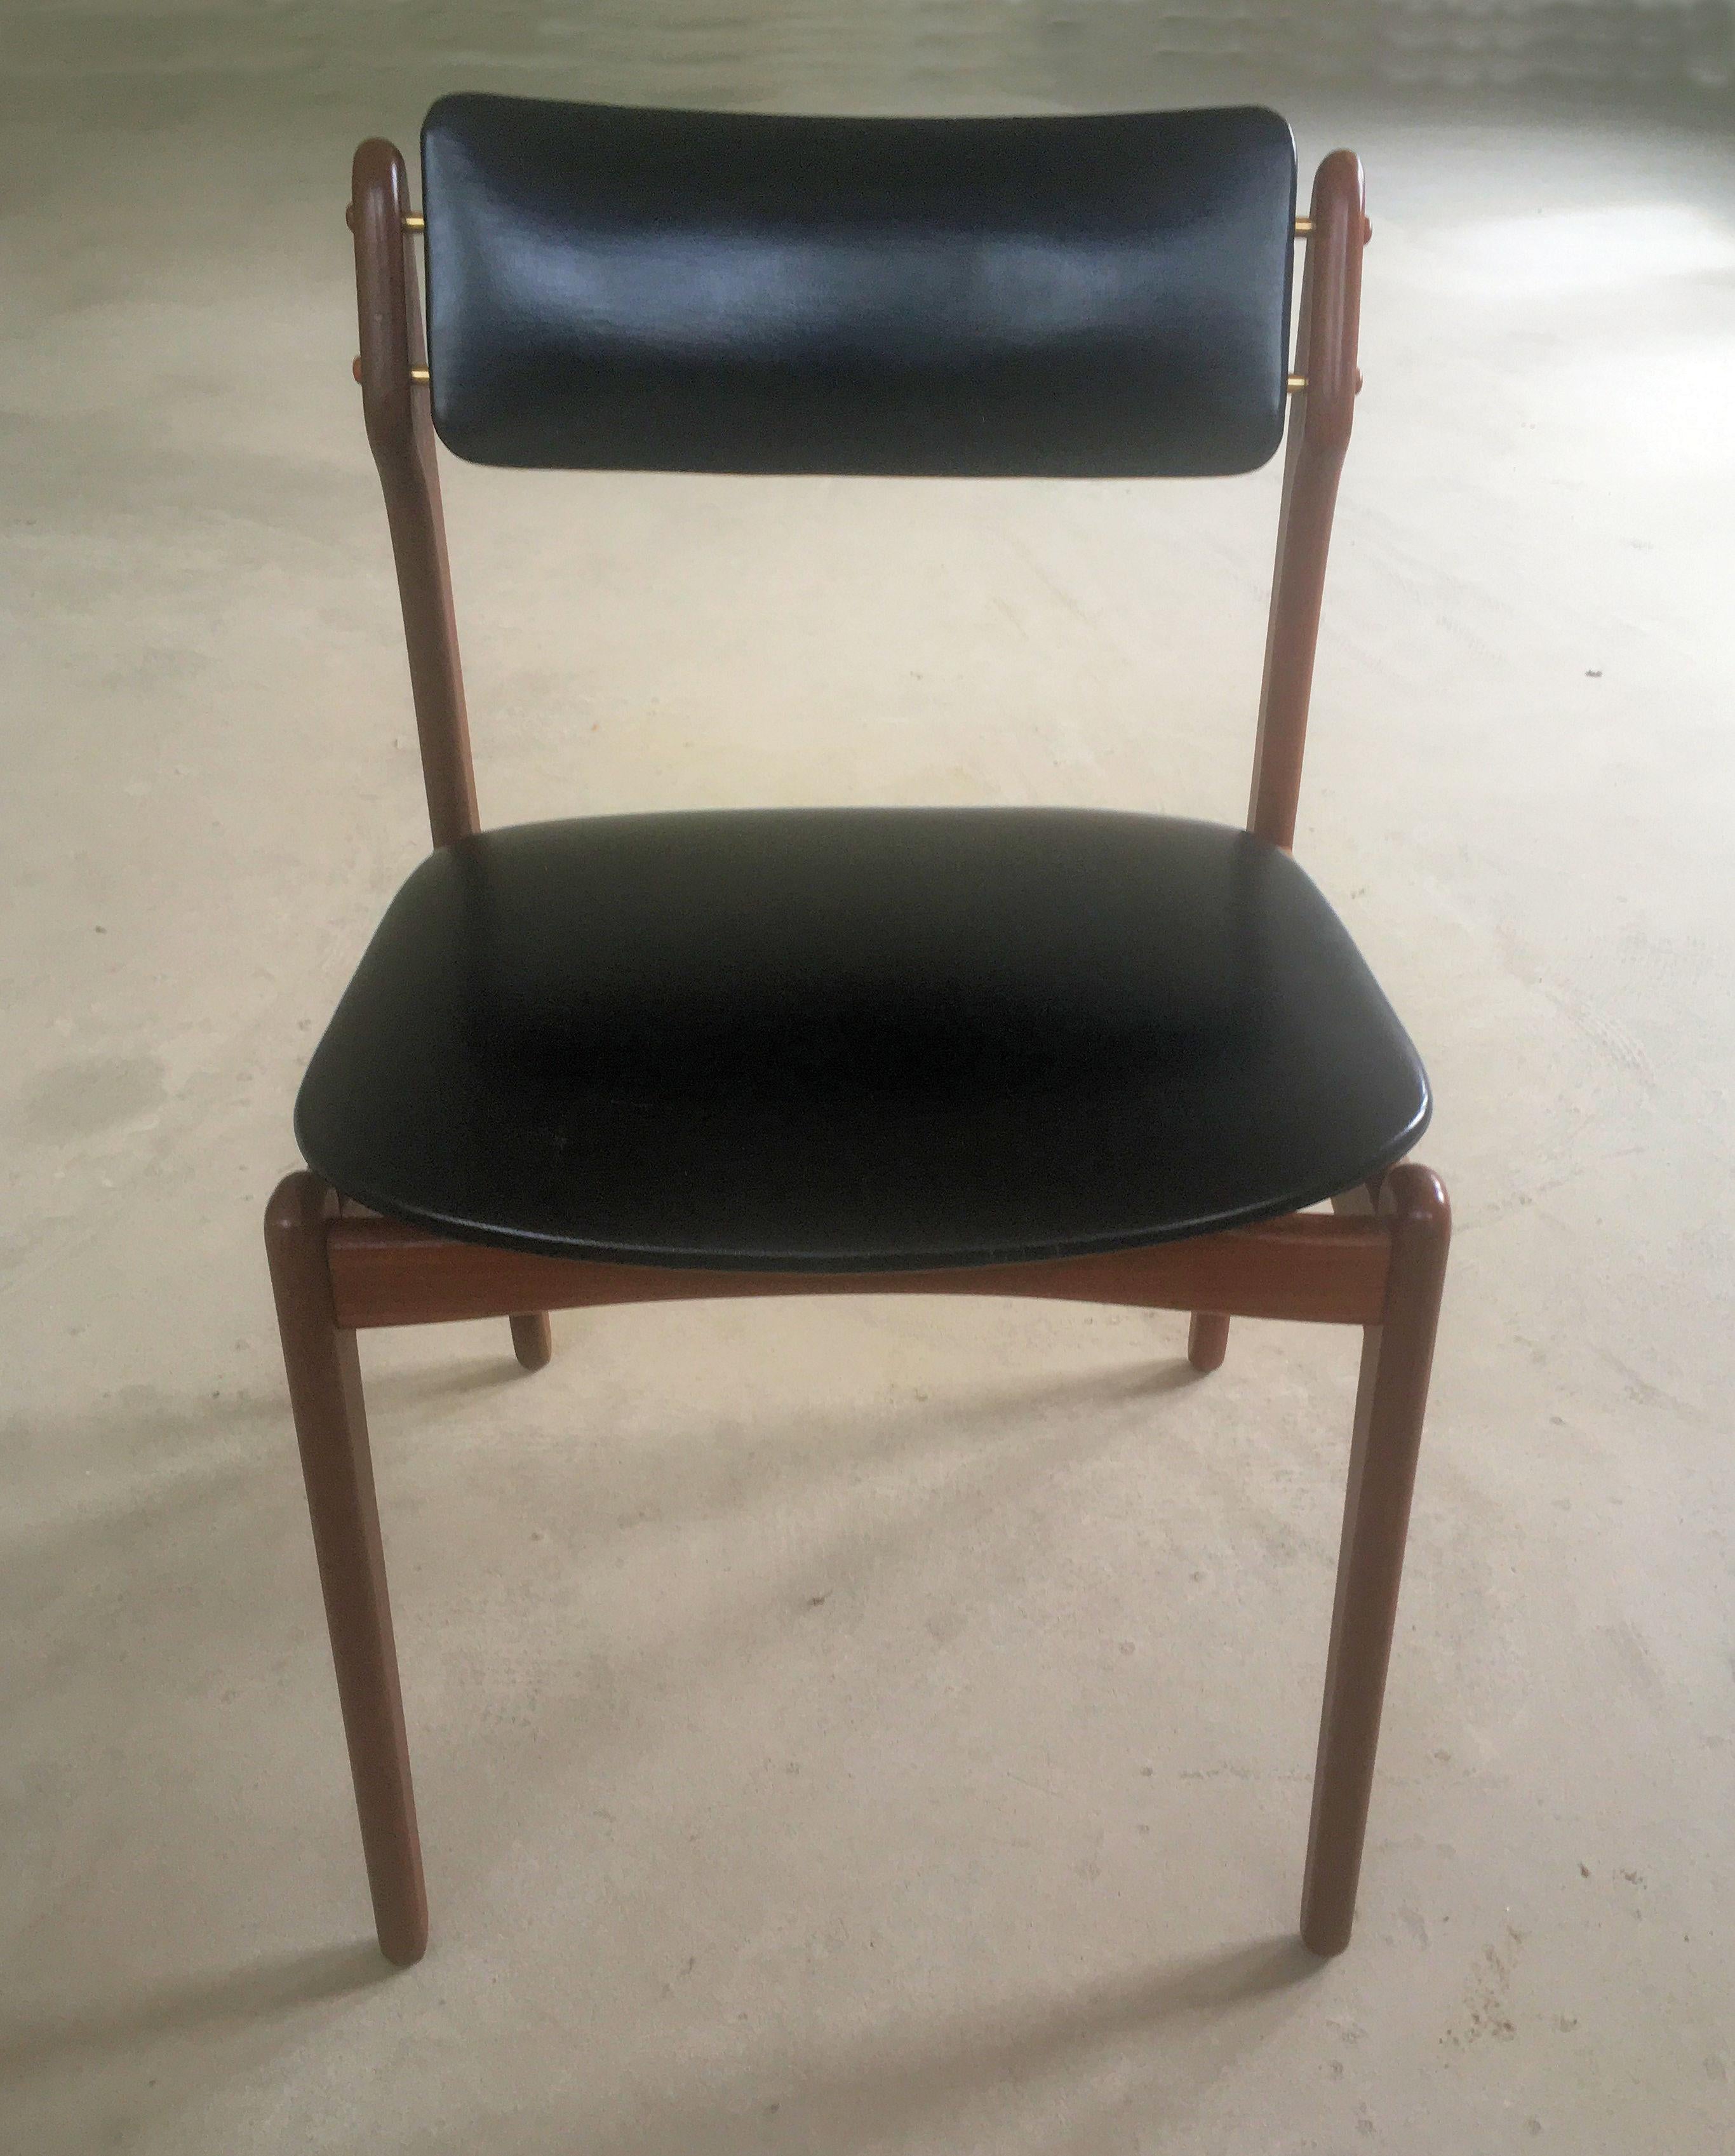 Chaises de salle à manger en teck Erik Buch des années 1960.

Les chaises sont une évolution du modèle 49 de la chaise de salle à manger d'Eleg, connue pour son élégante assise flottante, à laquelle ont été ajoutés des détails tels qu'un dossier